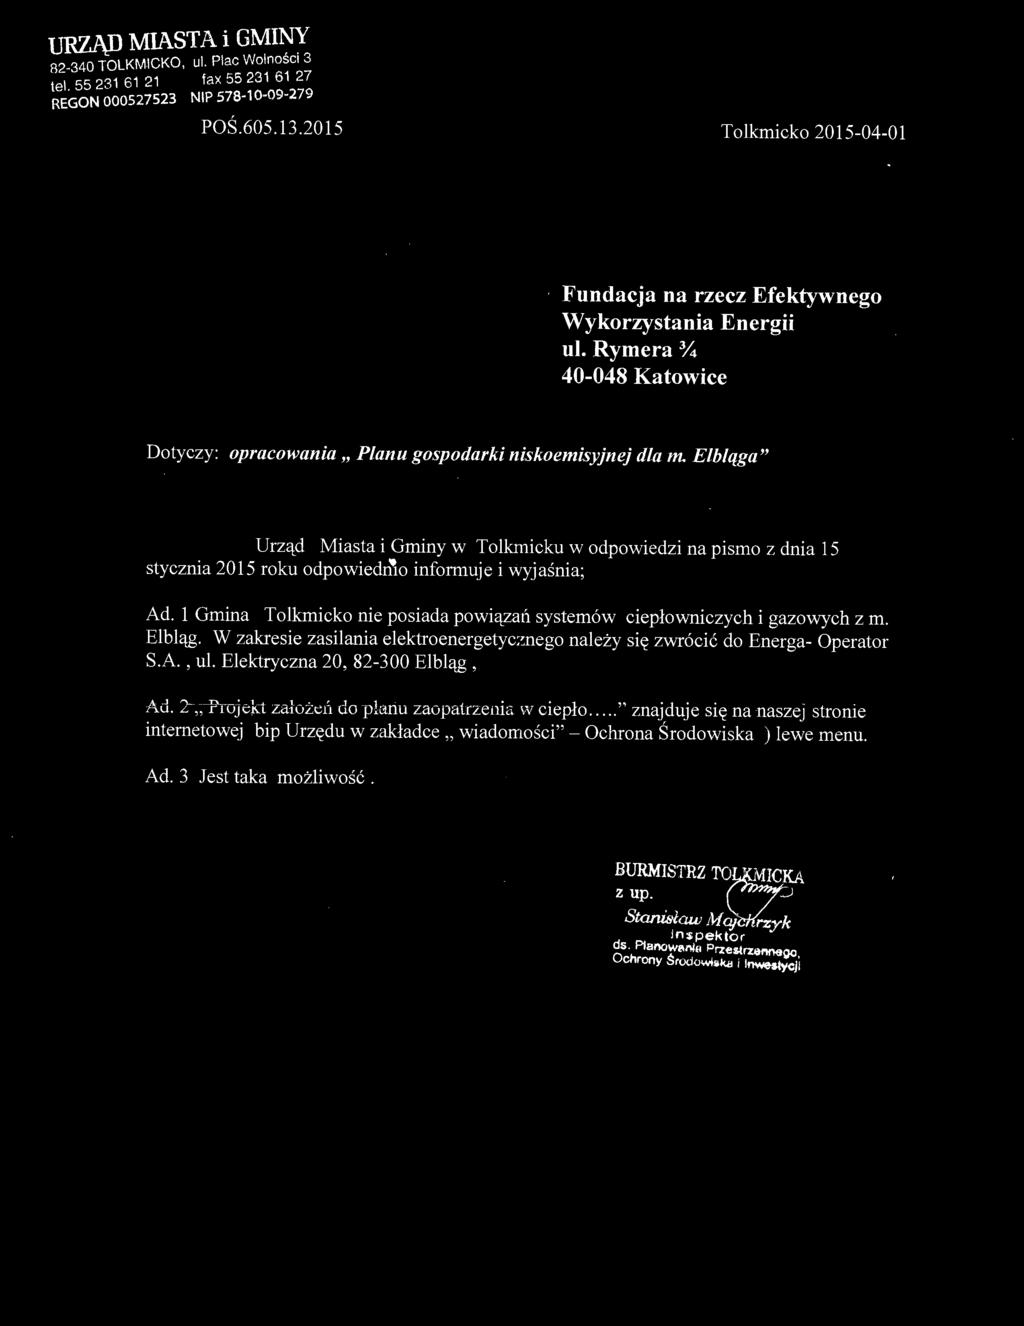 Elbląga" Urząd Miasta i Gminy w Tolkmicku w odpowiedzi na pismo z dnia 15 stycznia 2015 roku odpowiedd\o informuje i wyjaśnia ; Ad.